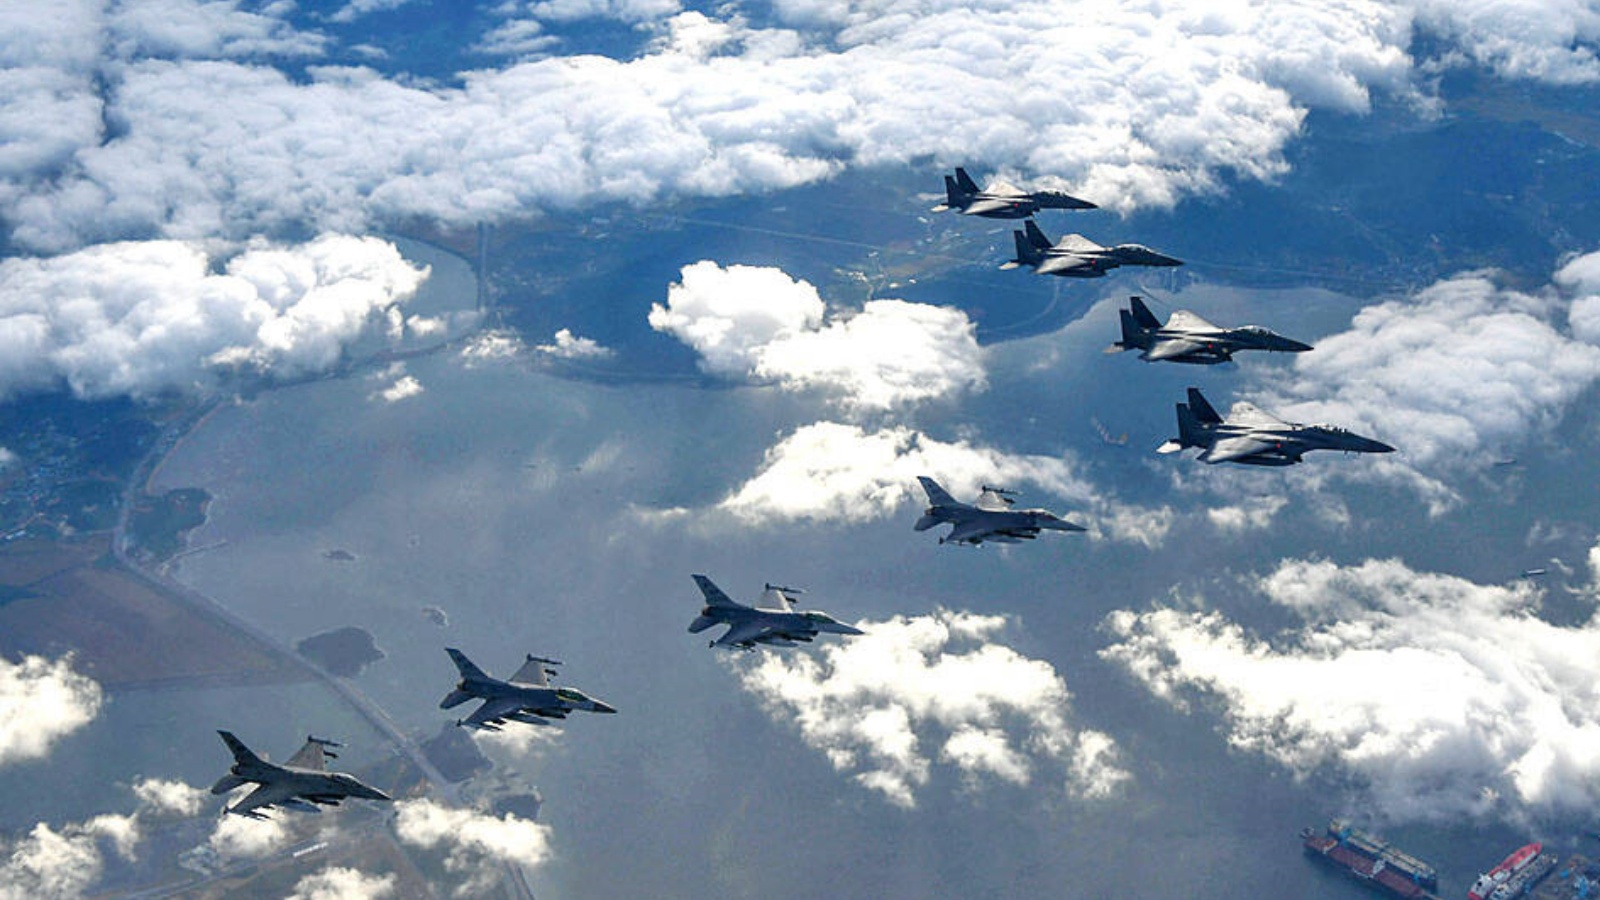 صورة المنشورة تم التقاطها في 5 أكتوبر وقدمتها وزارة الدفاع الوطني في كوريا الجنوبية أربع طائرات تابعة للقوات الجوية الكورية الجنوبية من طراز F-15K وأربع طائرات تابعة للقوات الجوية الأميركية من طراز F-16 تحلق فوق كوريا الجنوبية خلال تدريب قصف دقيق ردًا على إطلاق كوريا الشمالية صاروخًا باليستيًا